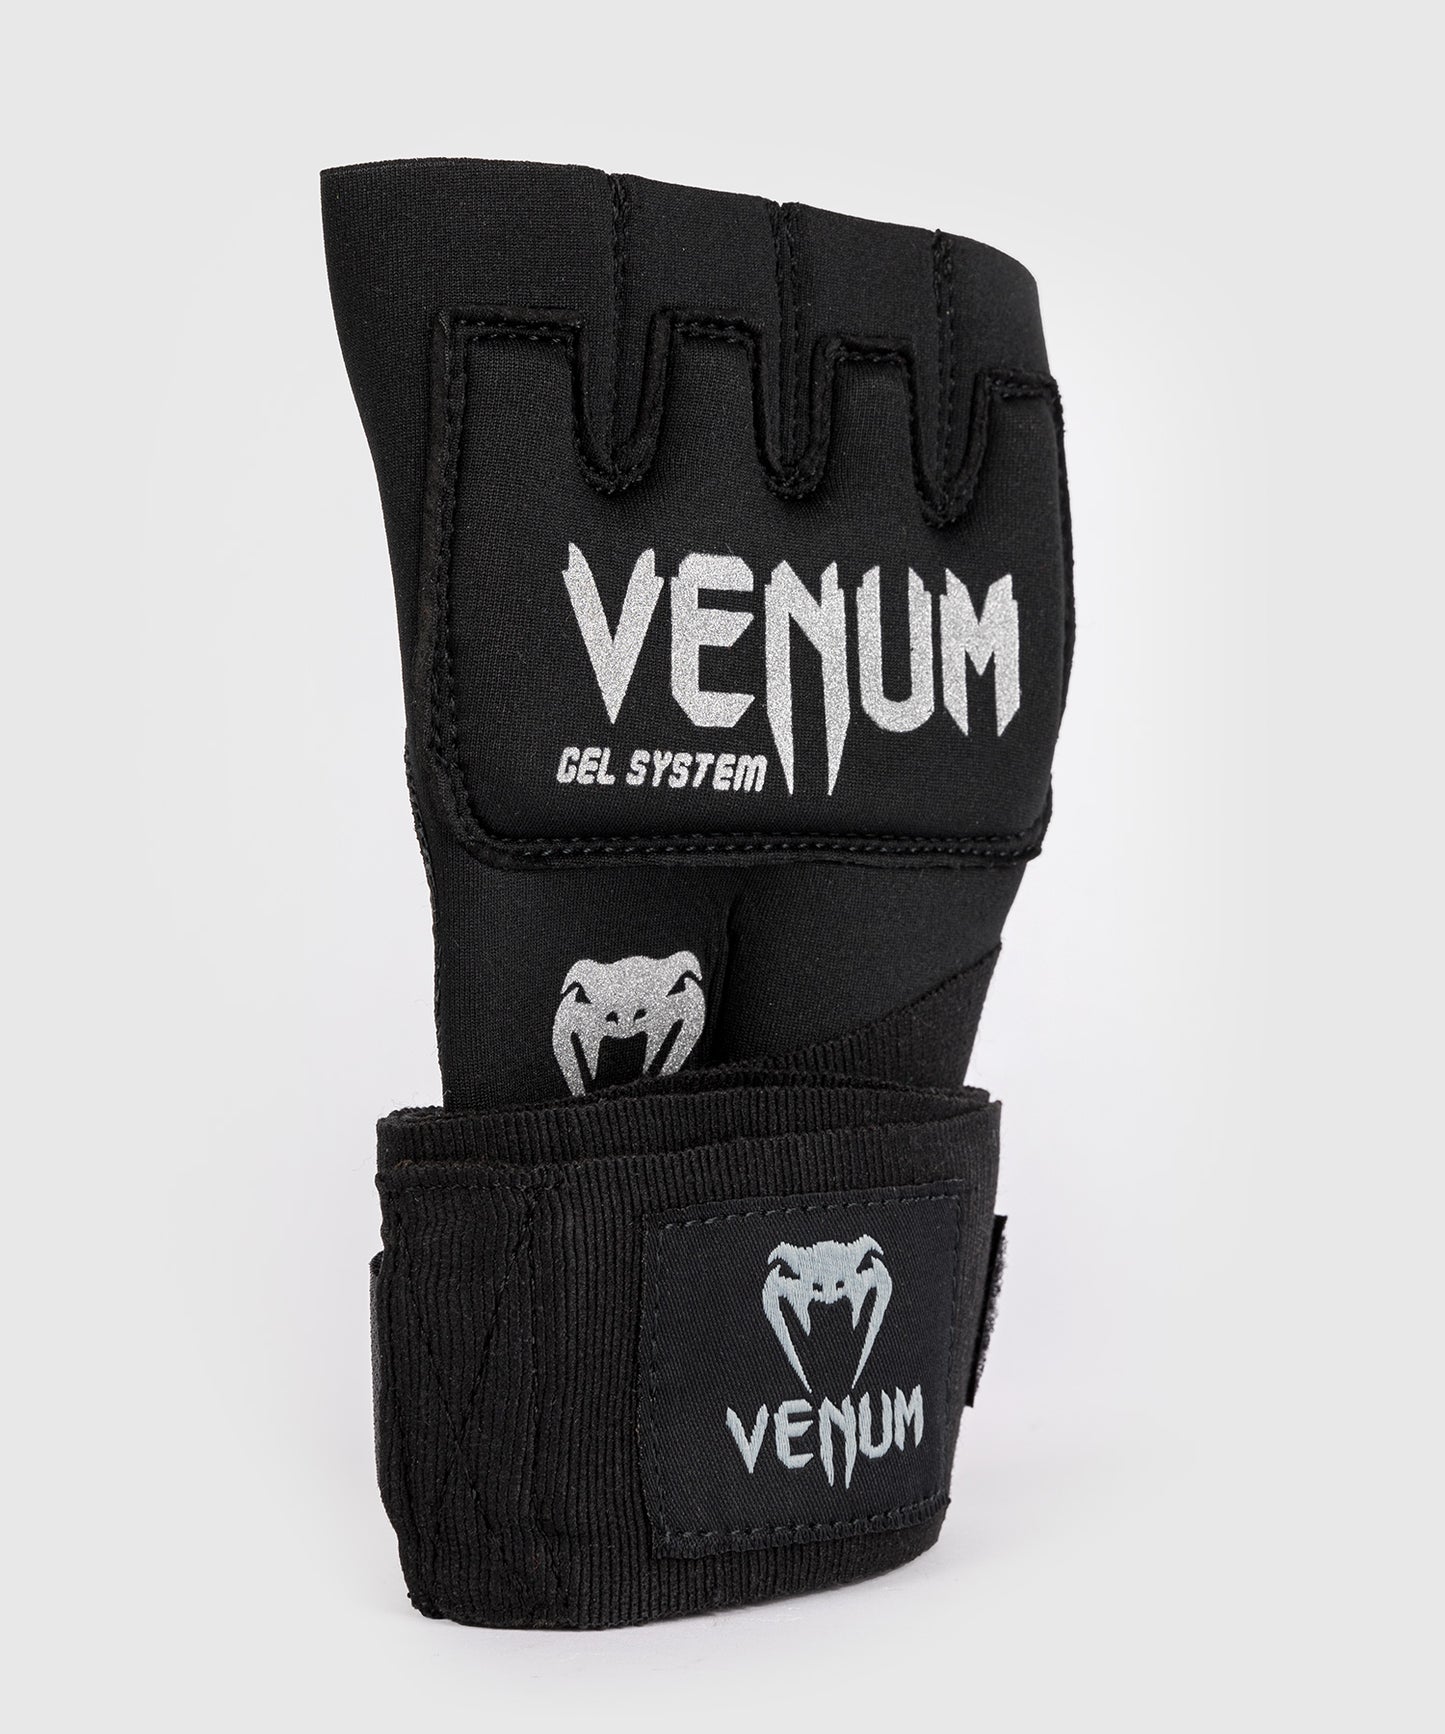 Venum Gel Kontact Quick Wraps - Black/Silver